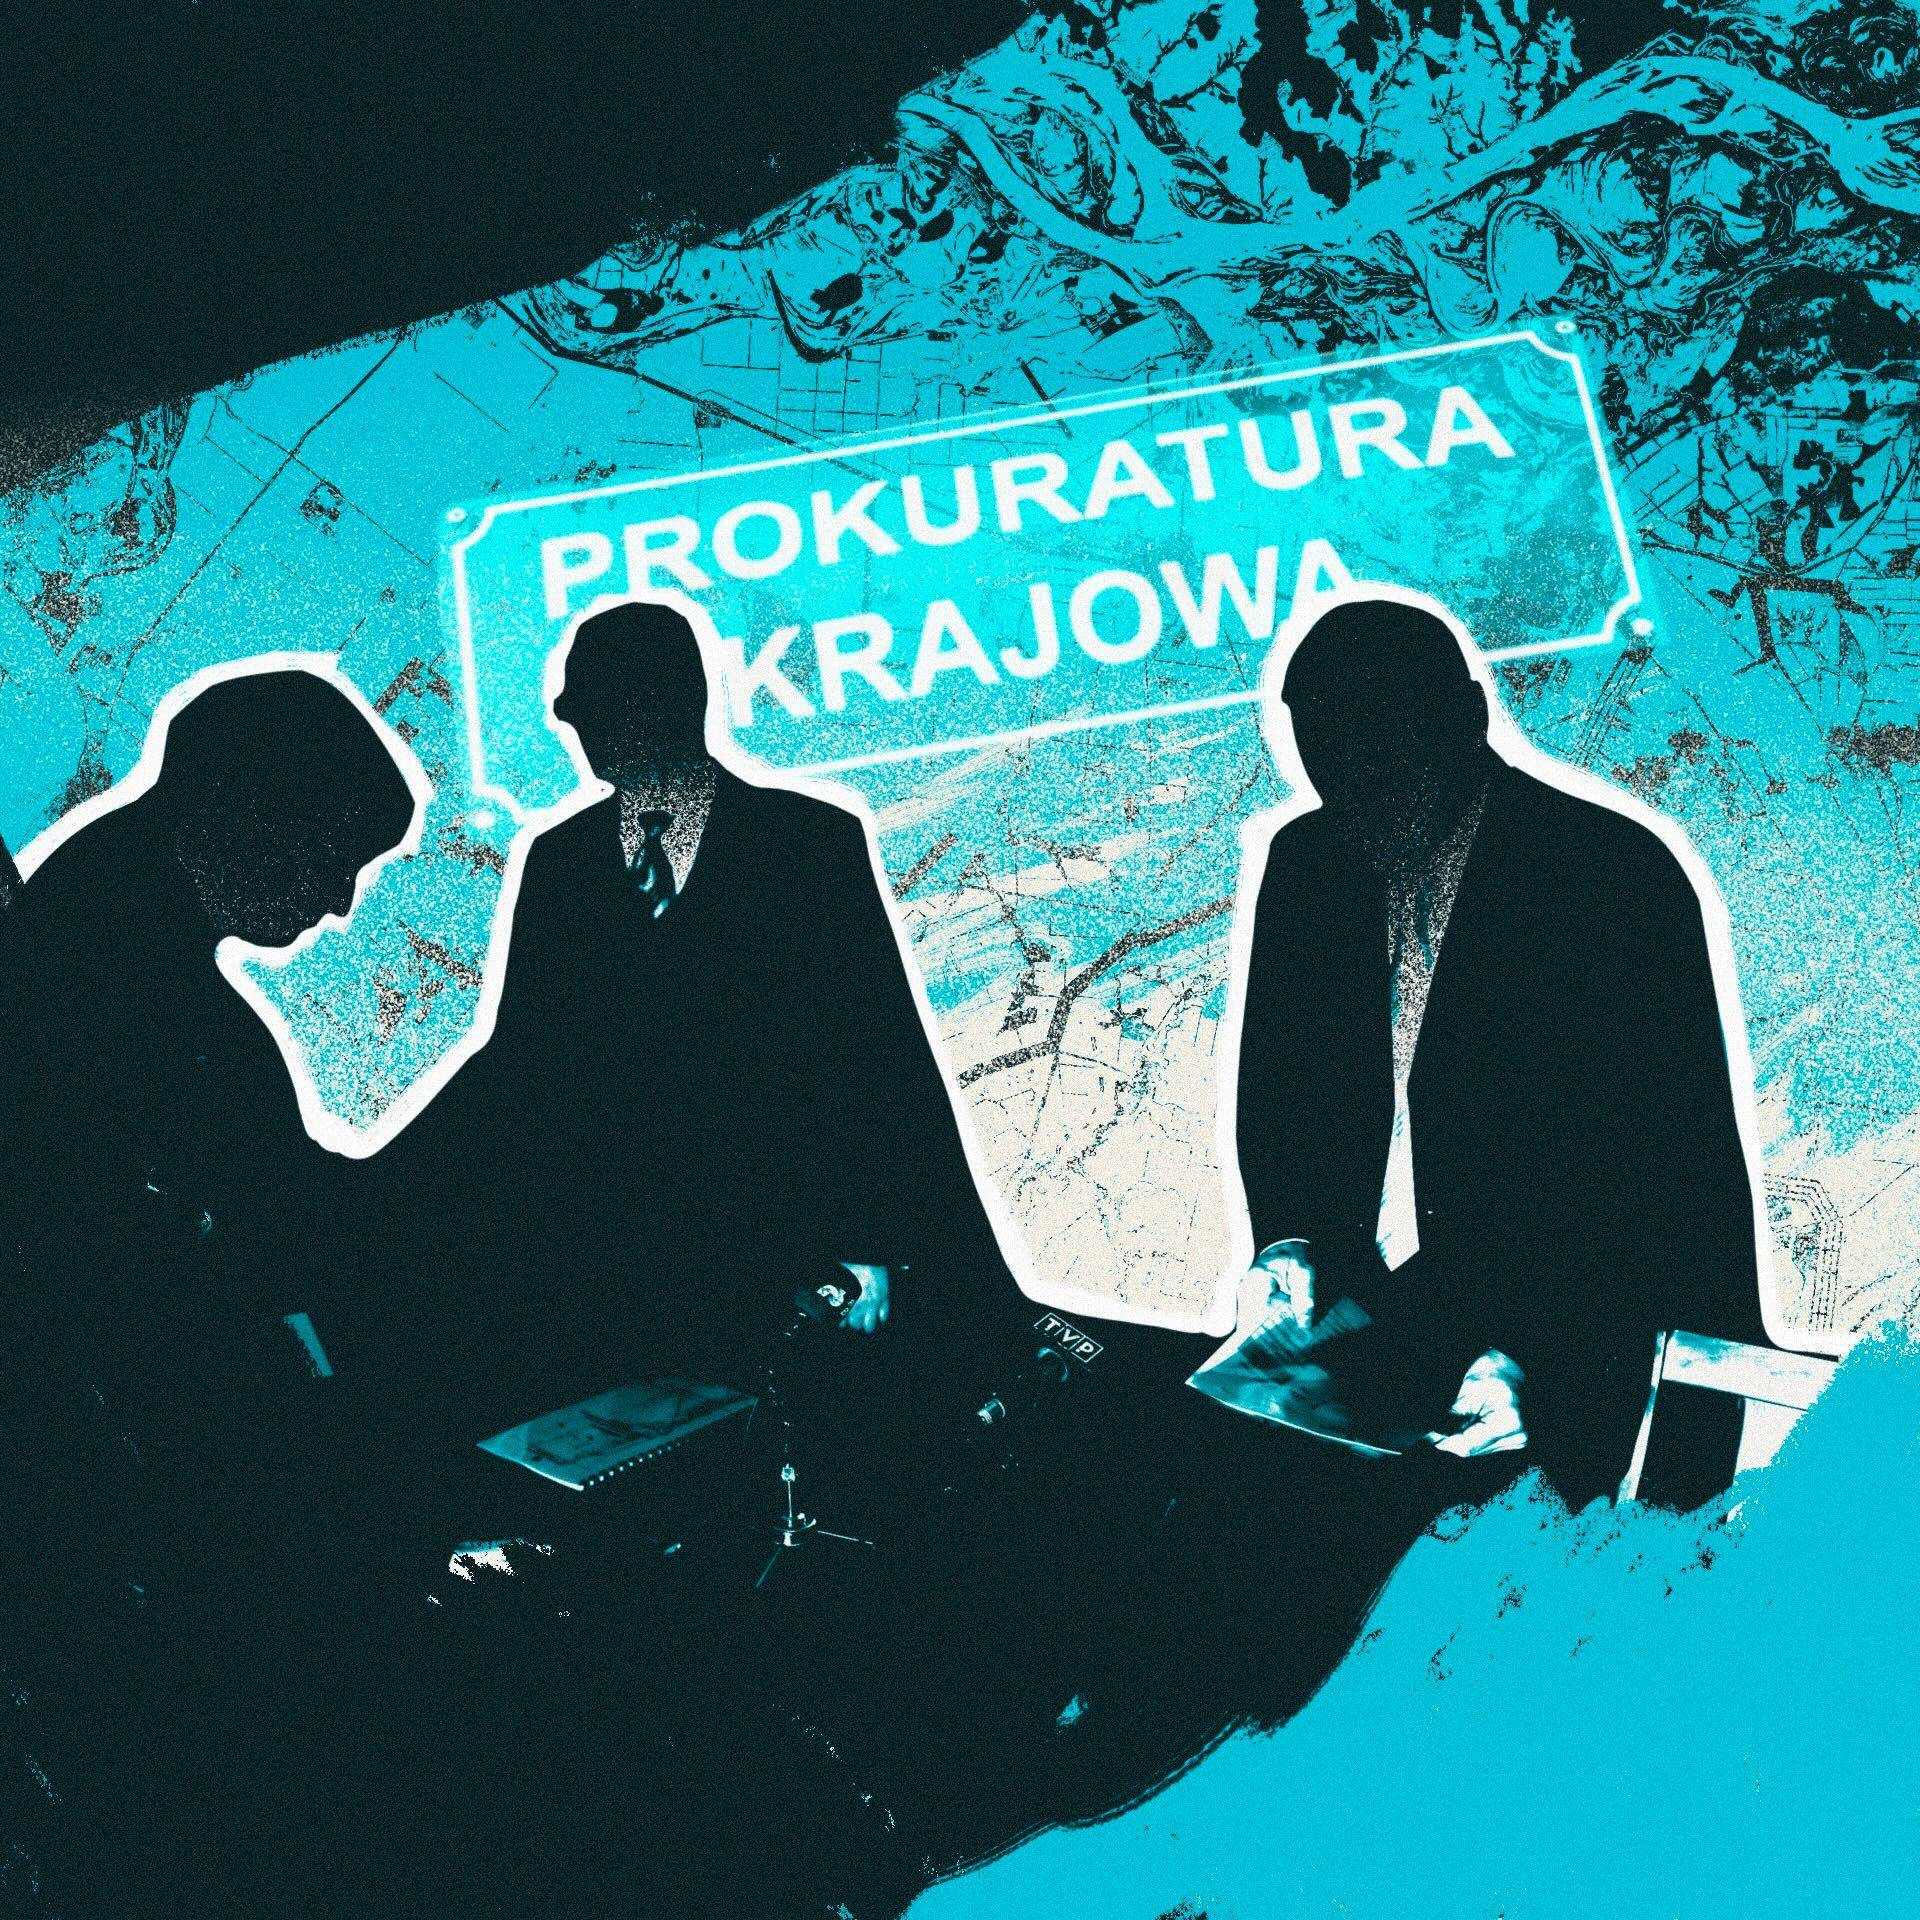 Ciemne sylwetki trzech mężczyzn w garniturach, pochylonych nad stołem, w tle tabliczka z napisem „Prokuratura Krajowa” w niebieskim kolorze